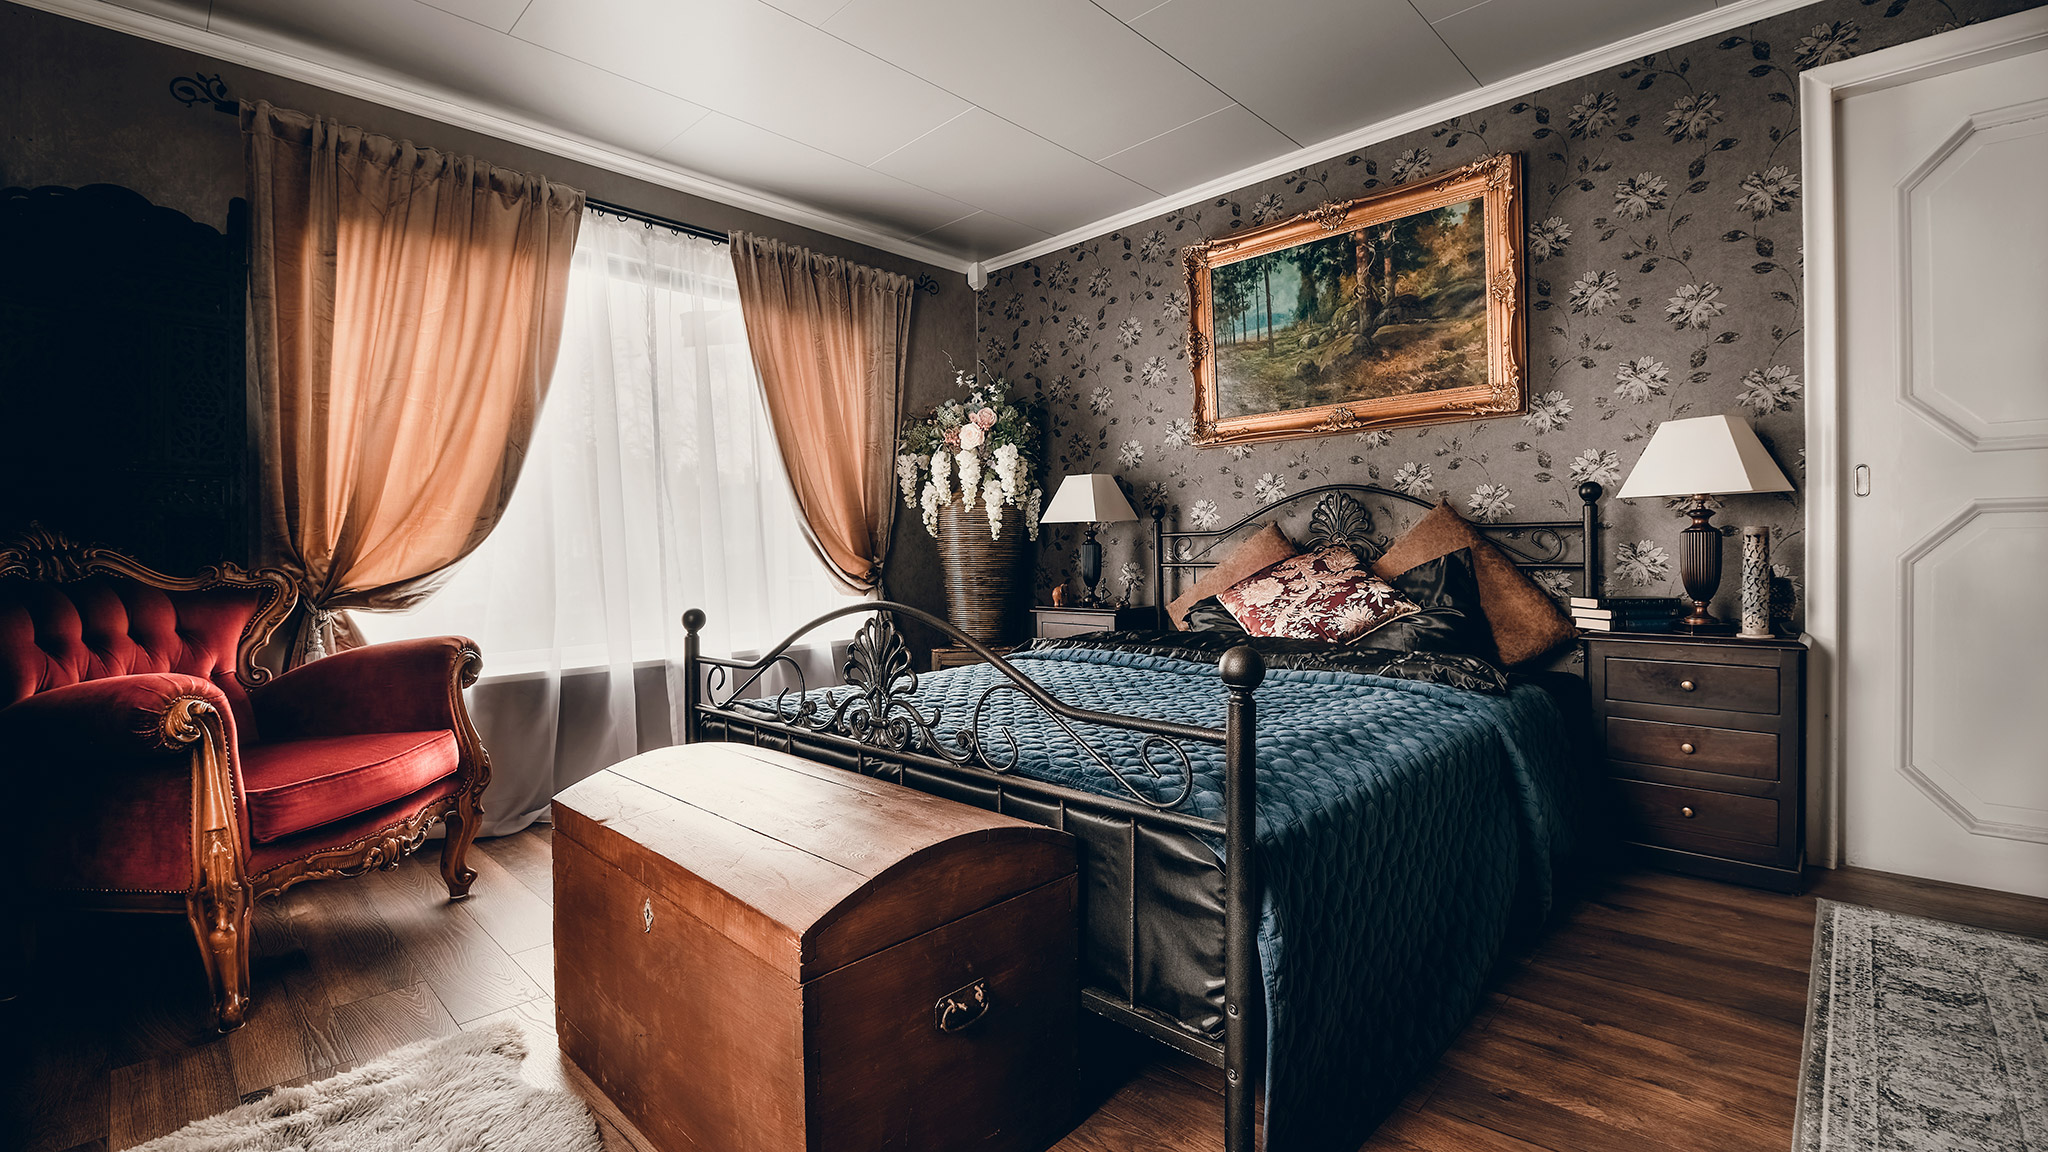 Nydelig rom i gammel stil med en gammel seng, blomster og bilder på veggen